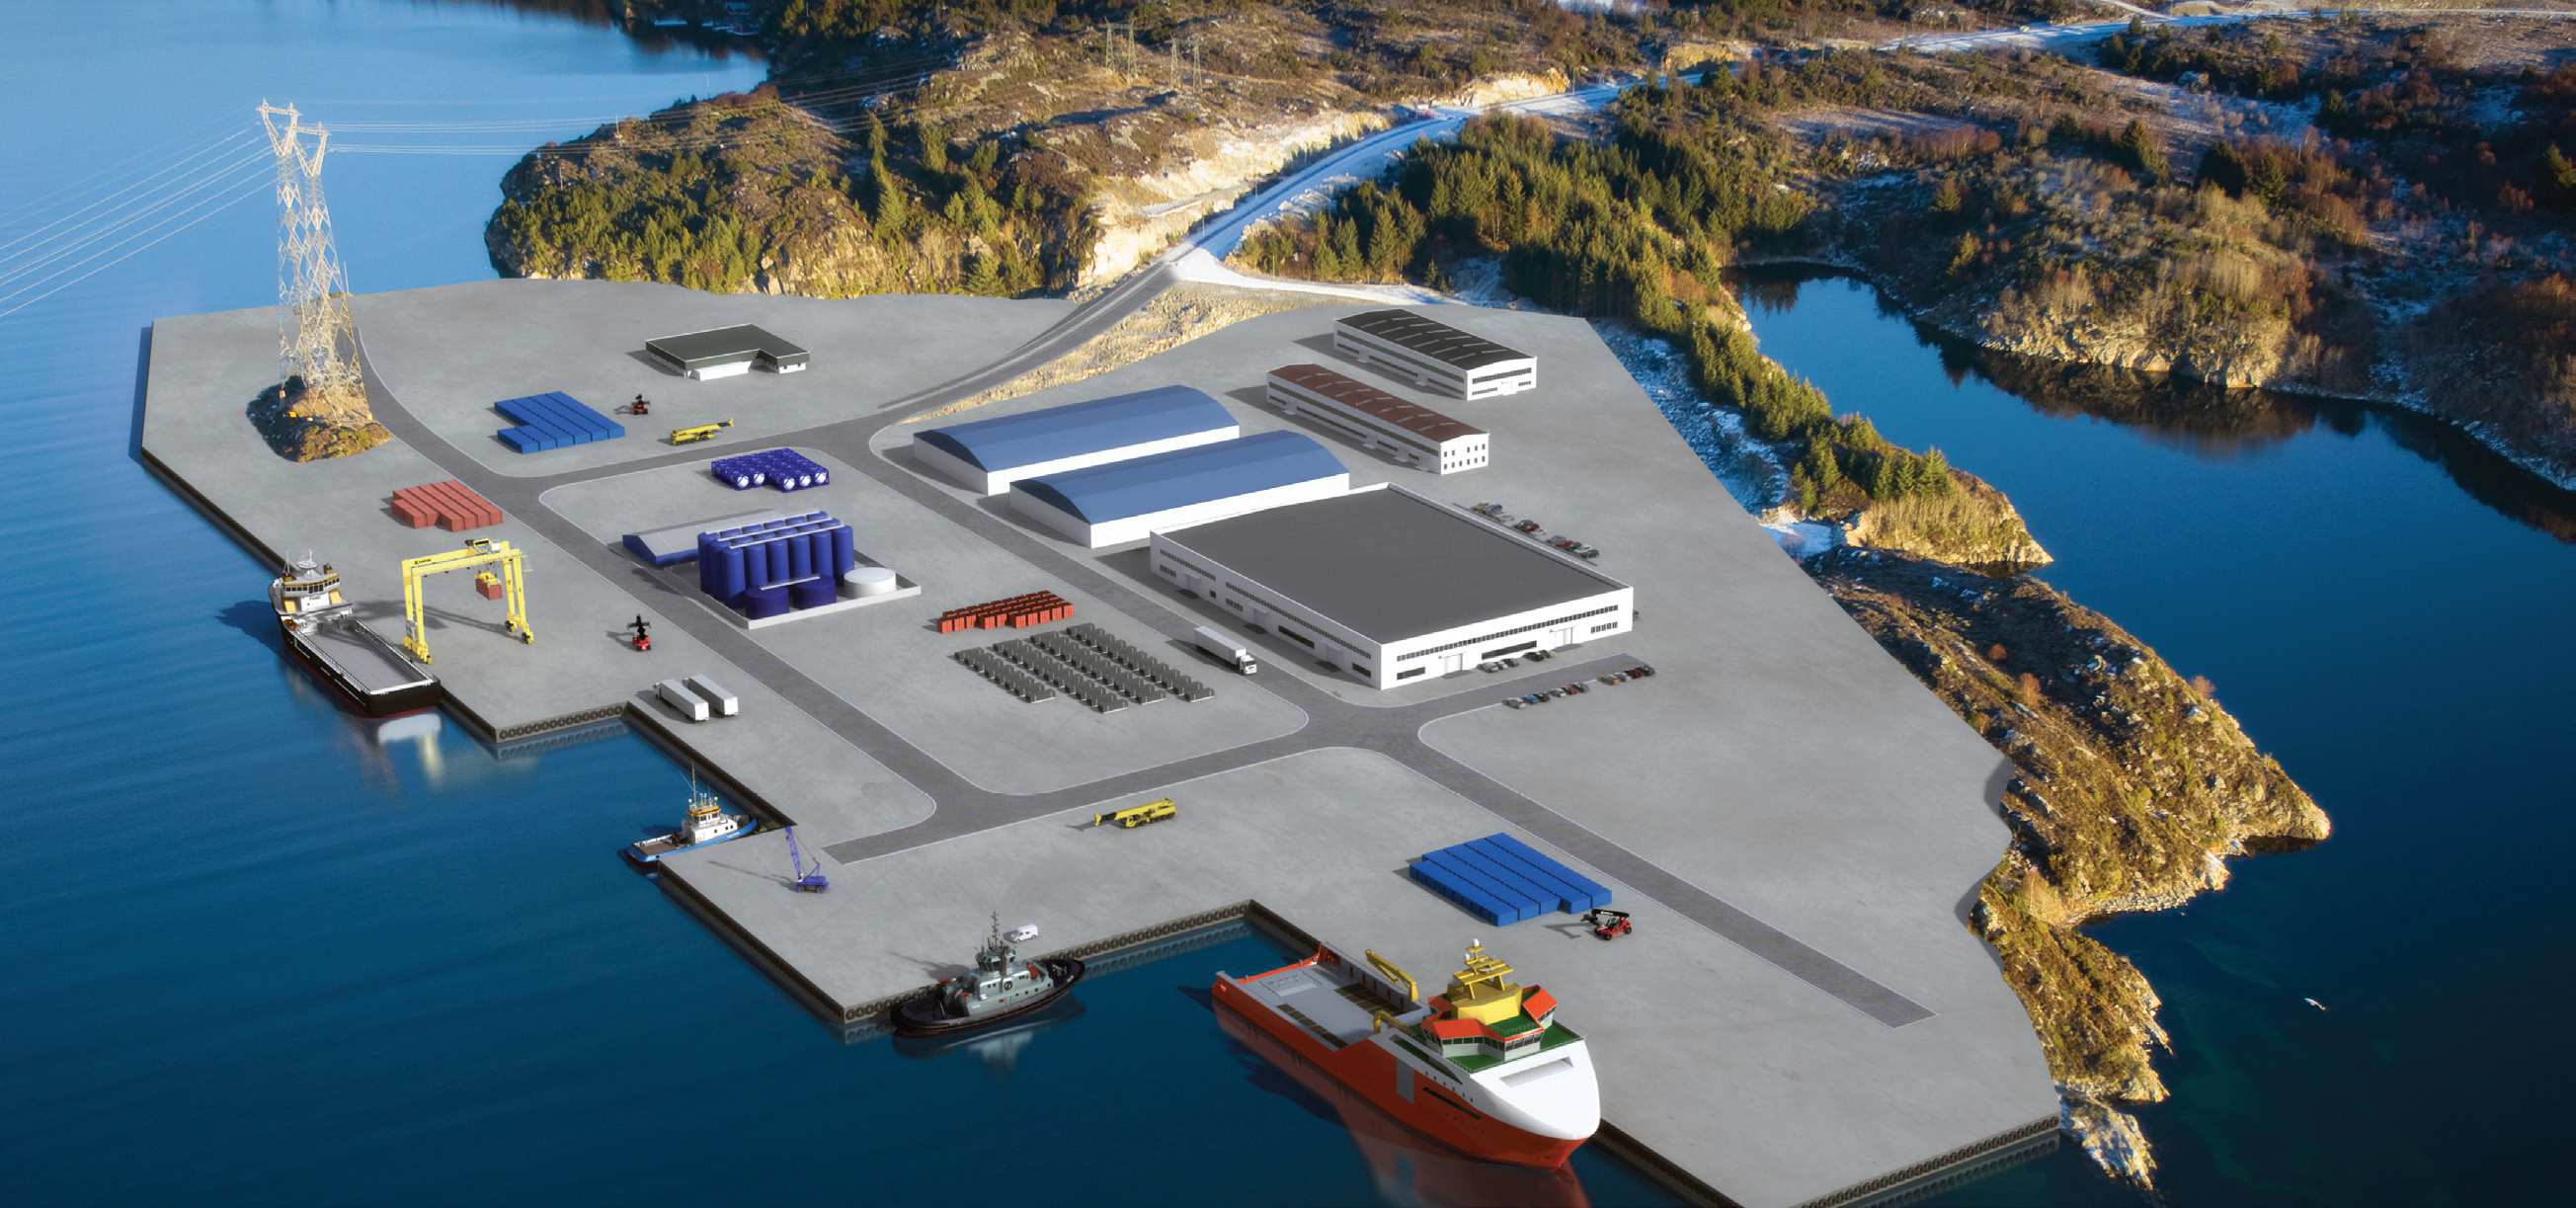 Behandlingsanlegg for boreavfall i Gismarvik havn, Tysvær kommune Risikoanalyse